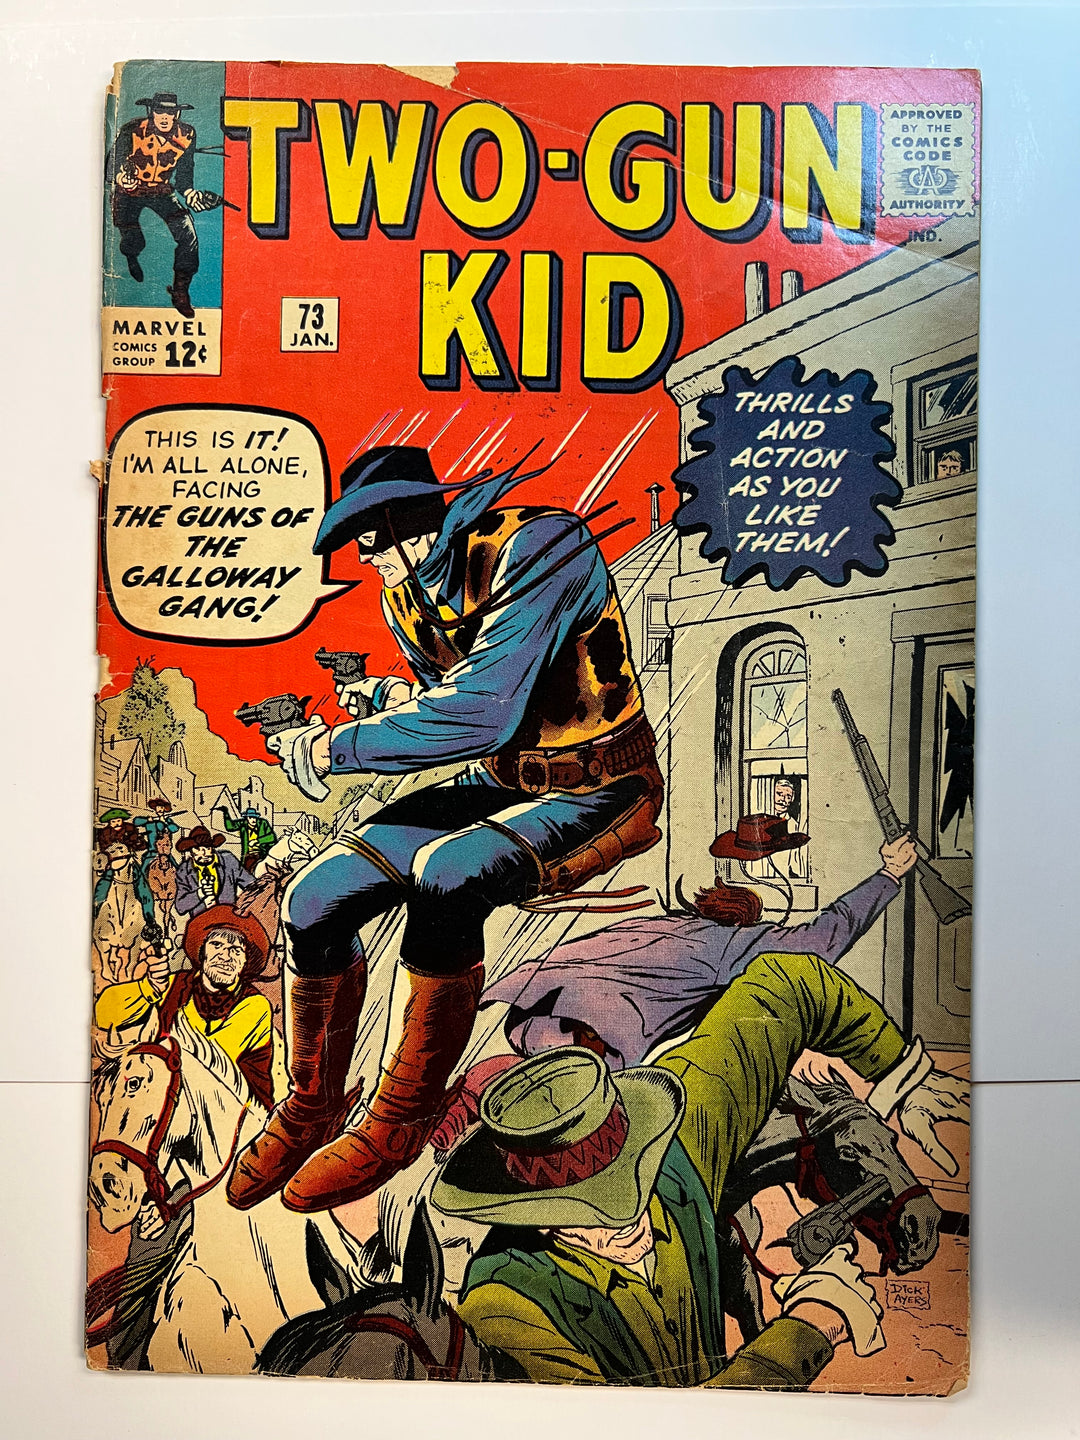 Two-Gun Kid Marvel #73 1965 G